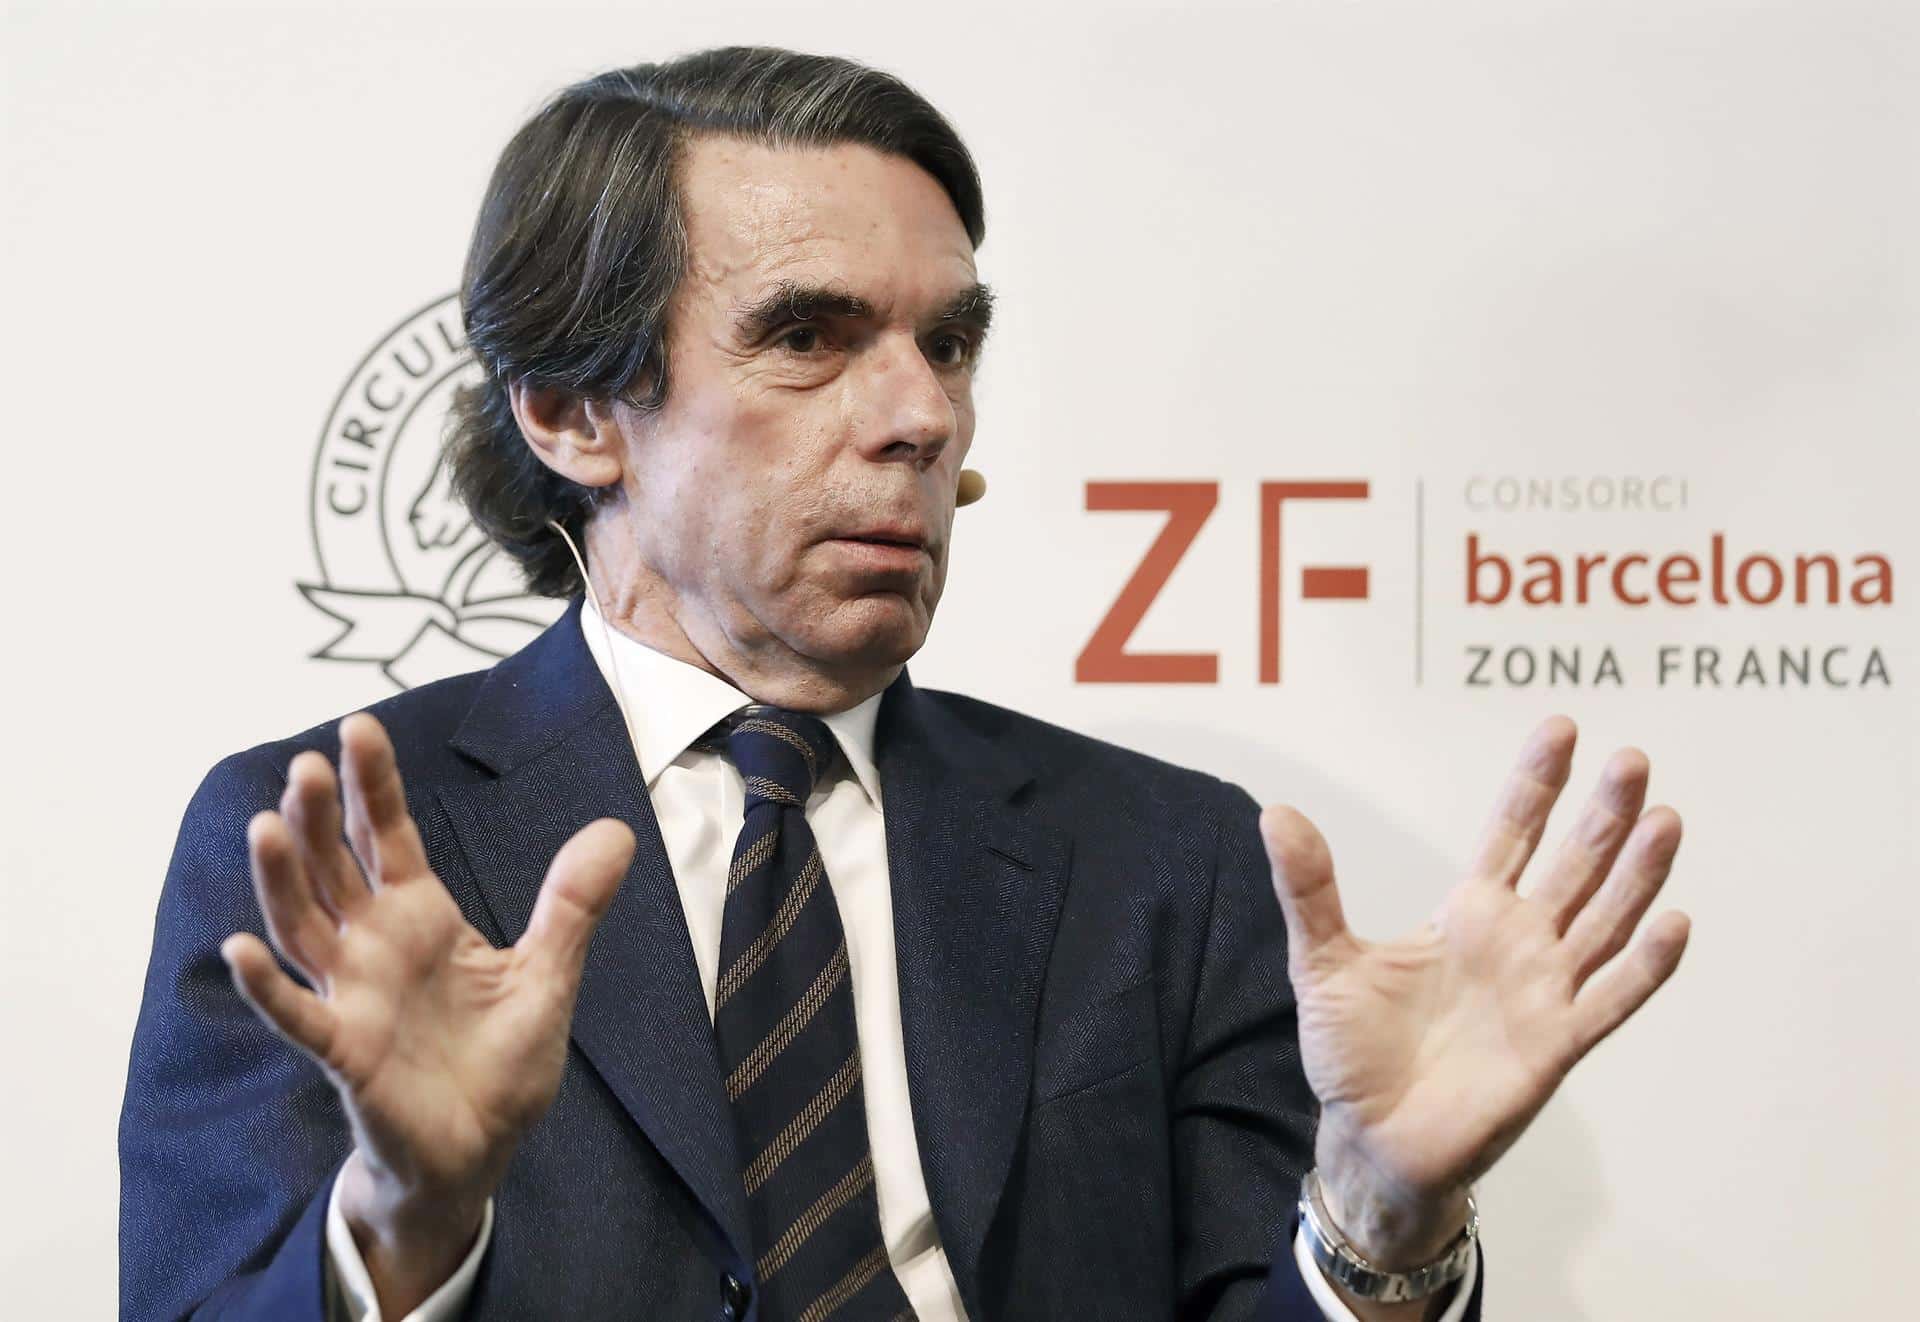 Aznar sobre el cambio de posición en el Sáhara: "Es un error histórico que vamos a pagar muy caro"